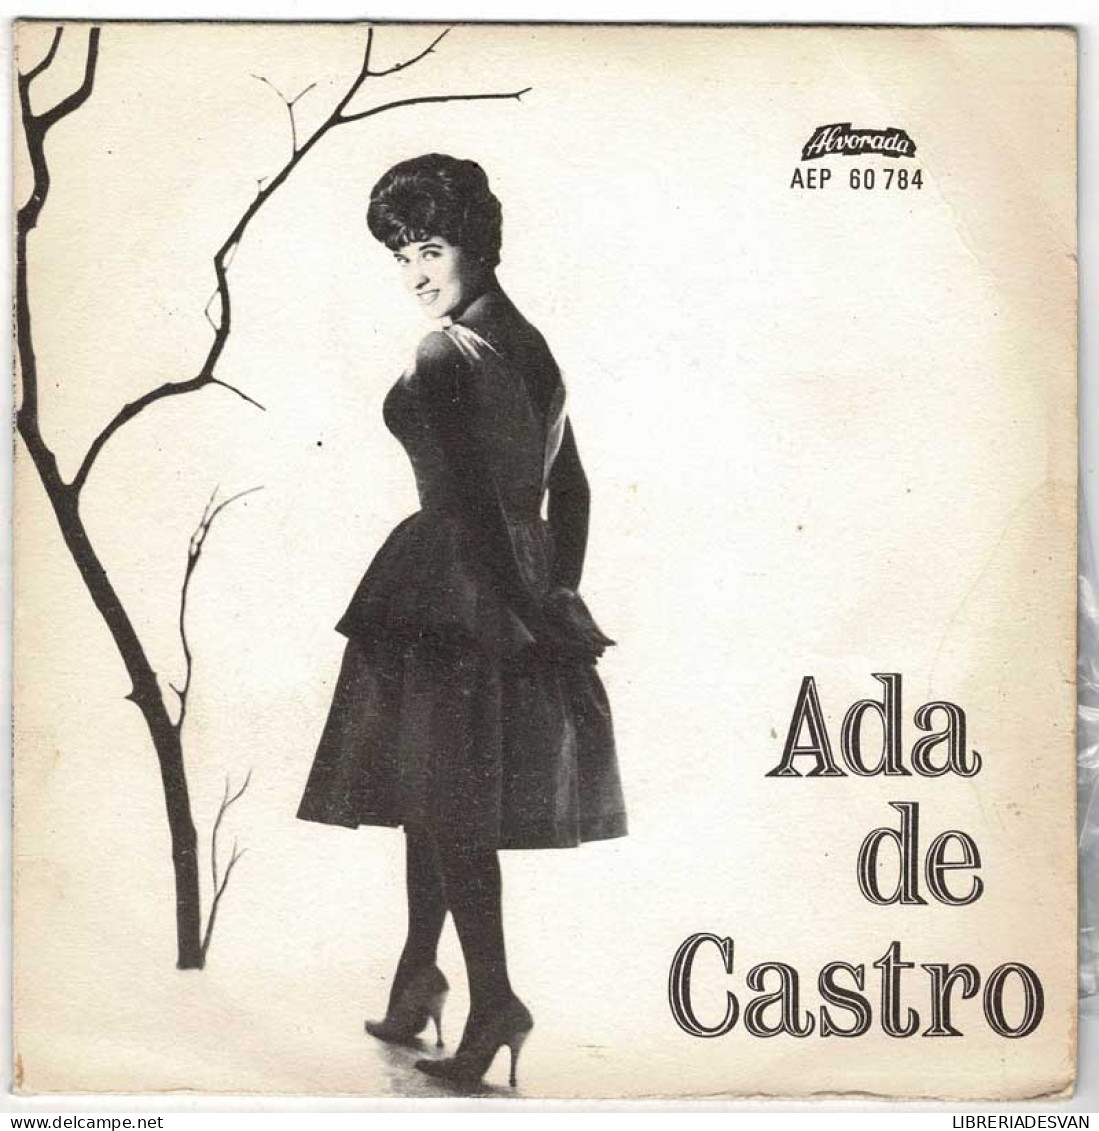 Ada De Castro - Chegou O Fado + 3. EP - Ohne Zuordnung